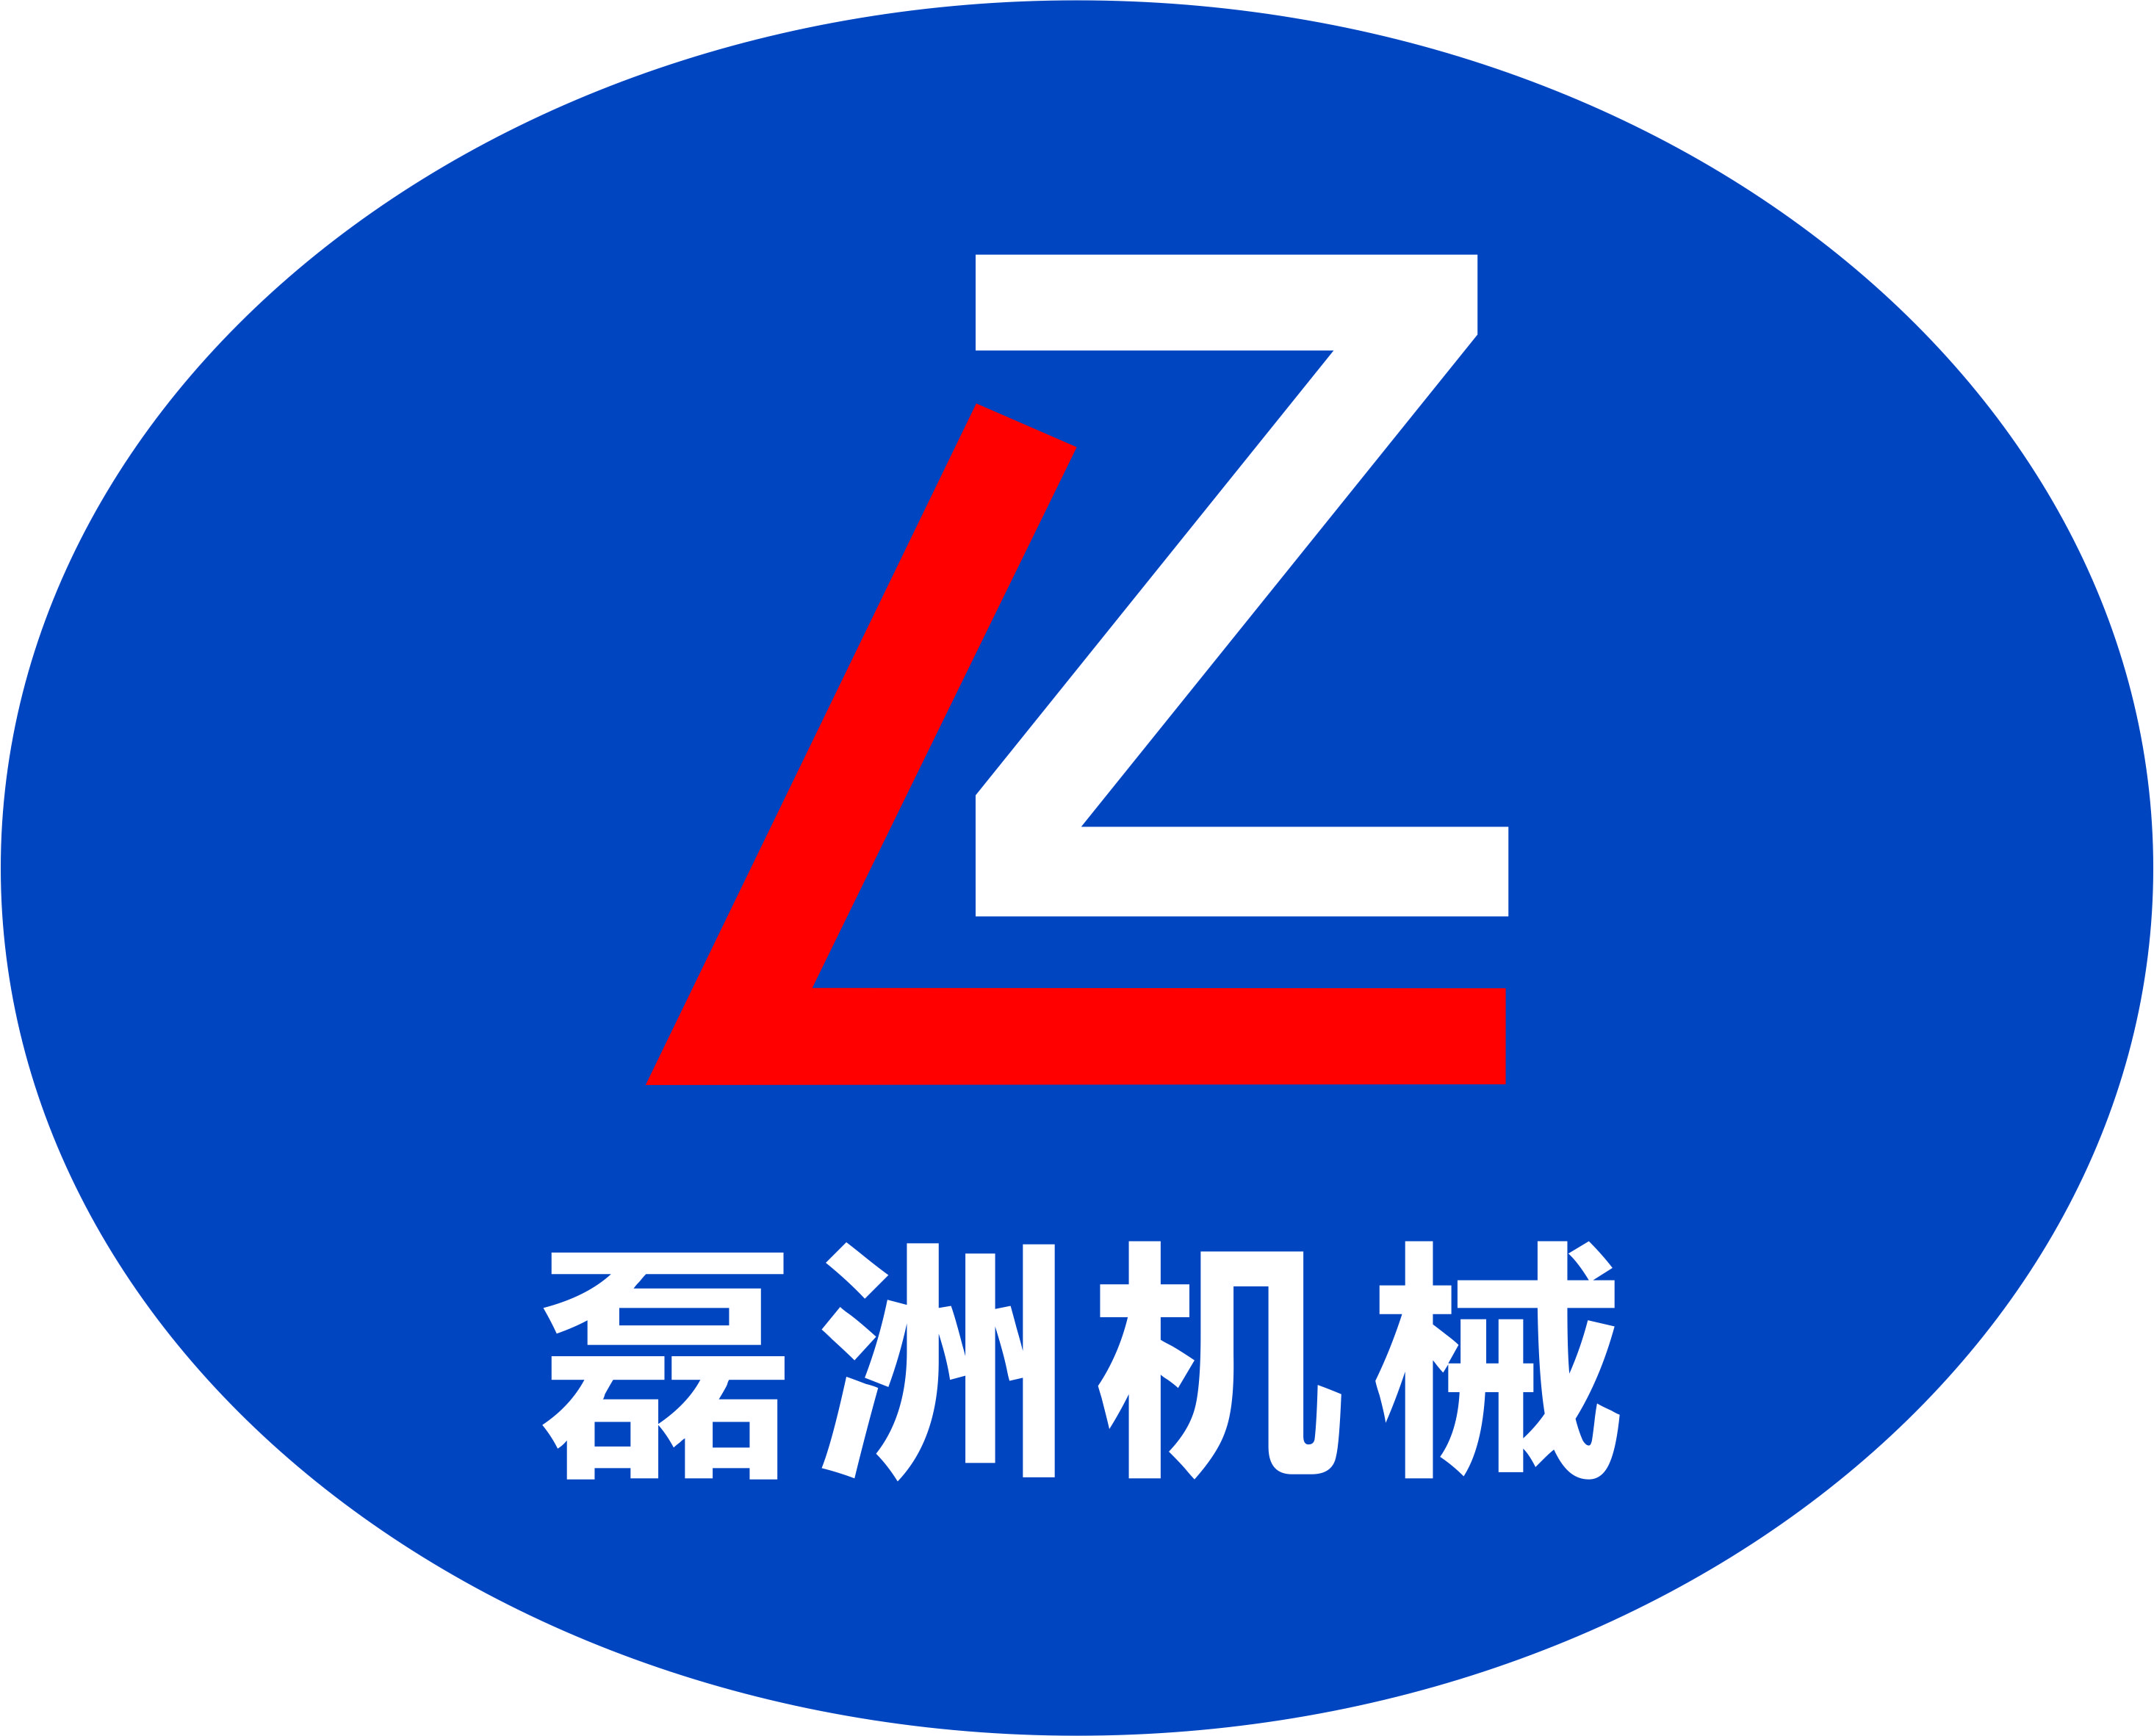 重庆磊洲机械制造有限公司 logo